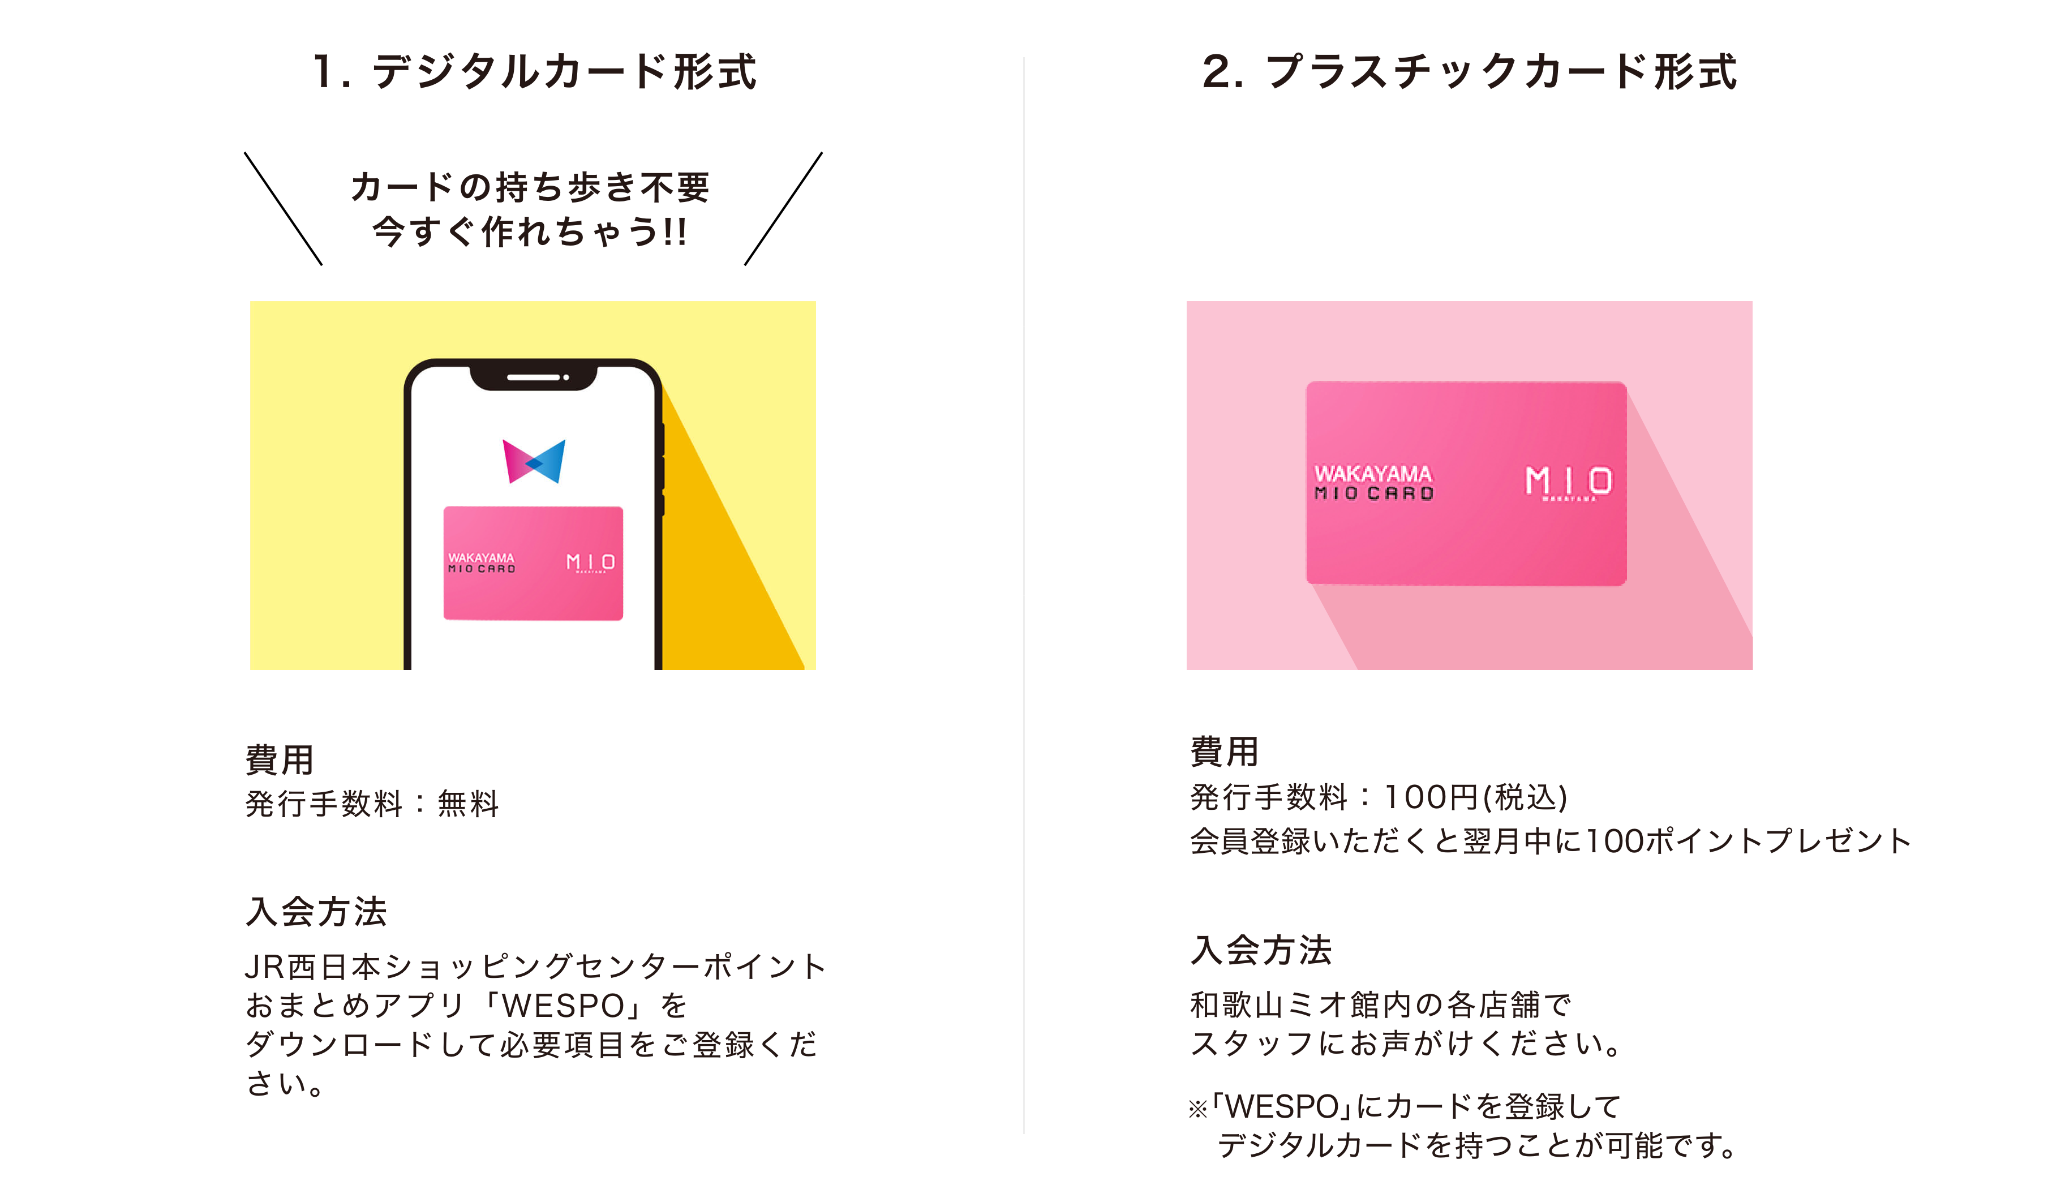 ①デジタルカード形式 発行手数料：無料 JR西日本ショッピングセンターポイントおまとめアプリ「WESPO」をダウンロードして必要項目をご登録ください。②プラスチックカード形式 発行手数料：100円(税込) 入会方法：和歌山ミオ館内の各店舗でスタッフにお声がけください。